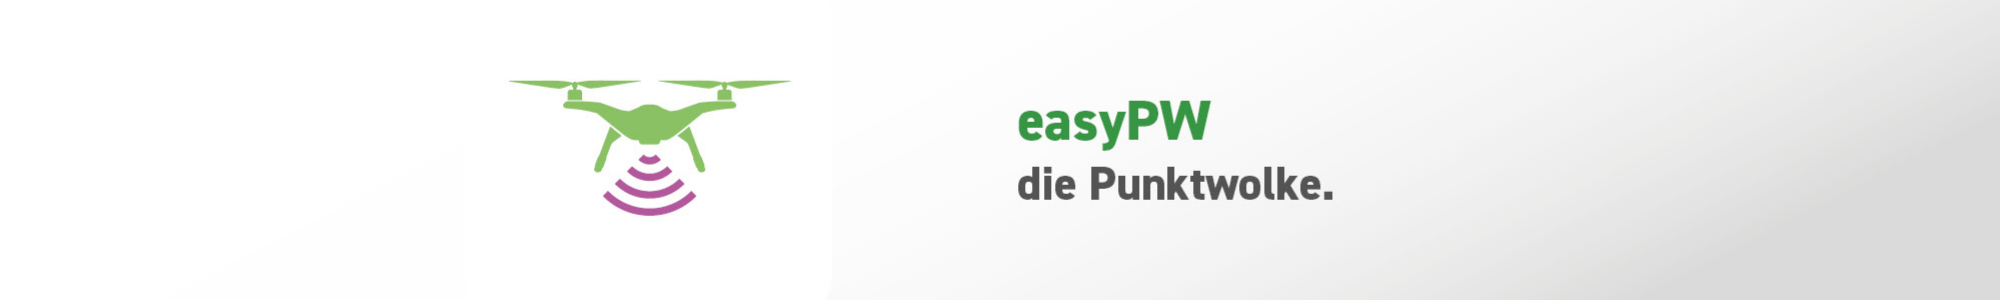 Modul easyPW - Die Punktwolke - isl-kocher GmbH